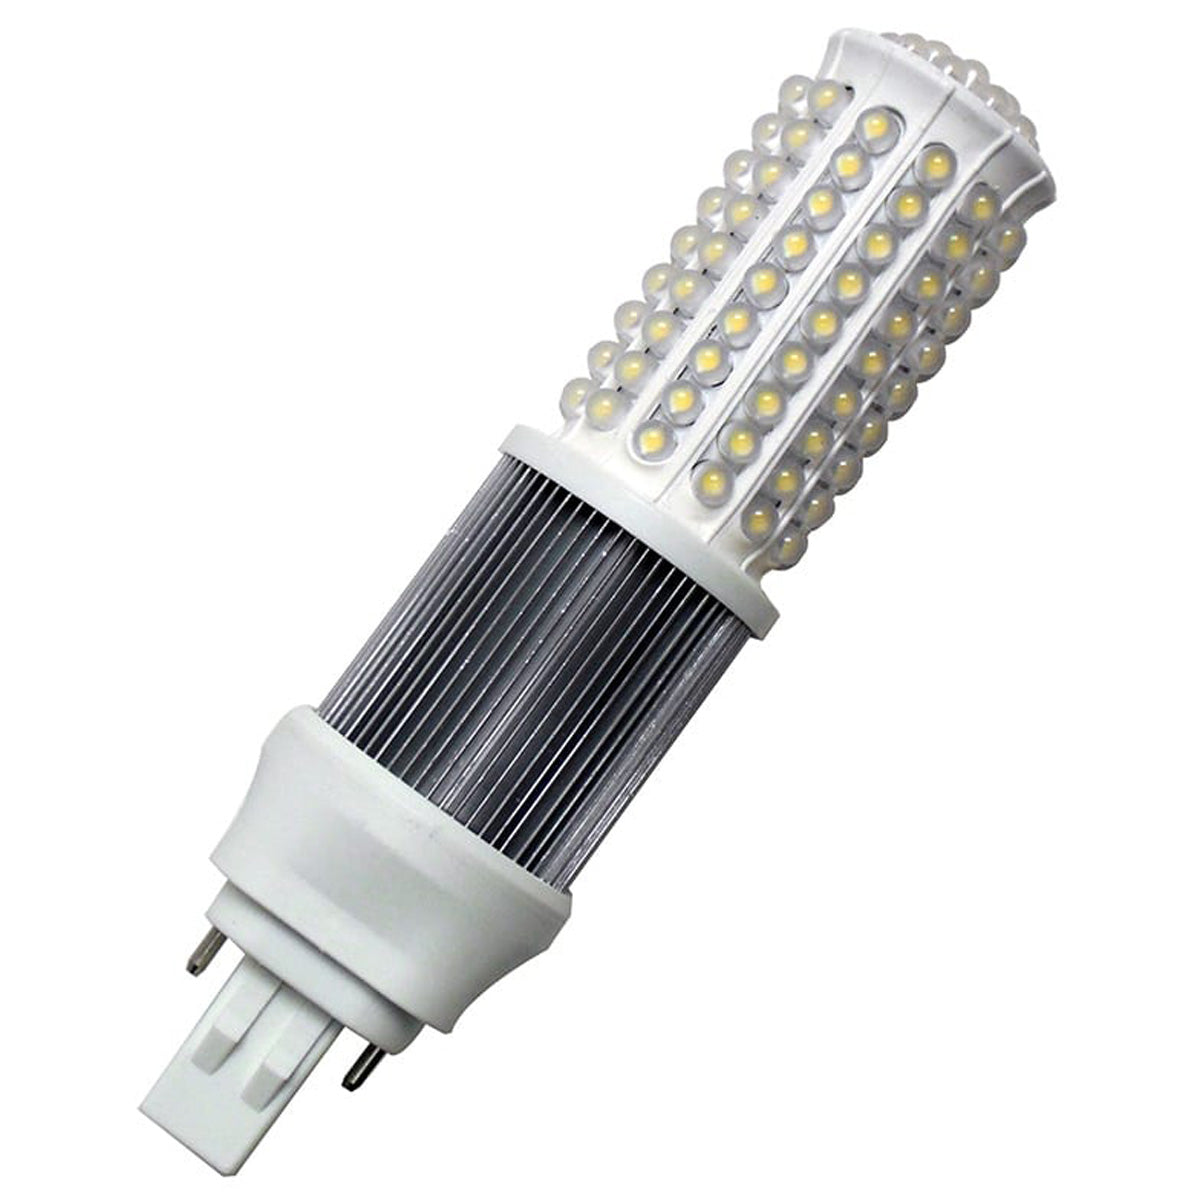 LED Wall Sconce Lamp – 7 Watt – P13(GX23) 2-Pin